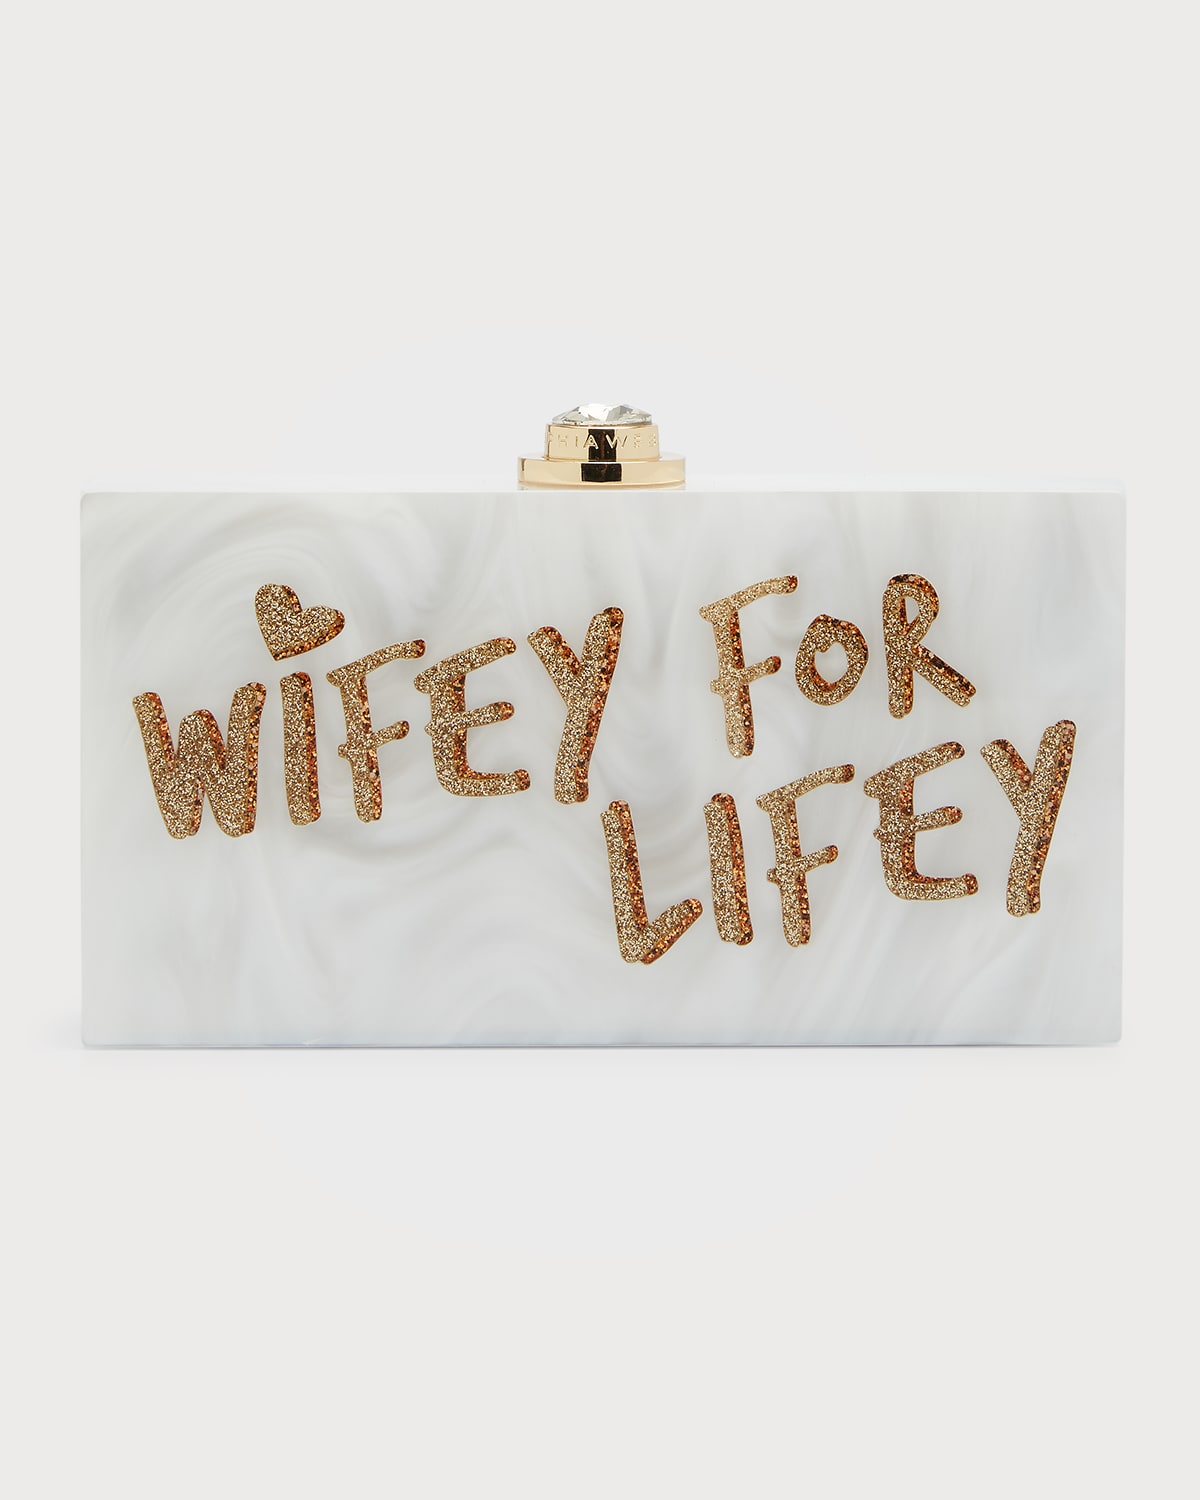 Cleo Wifey For Lifey Clutch Bag